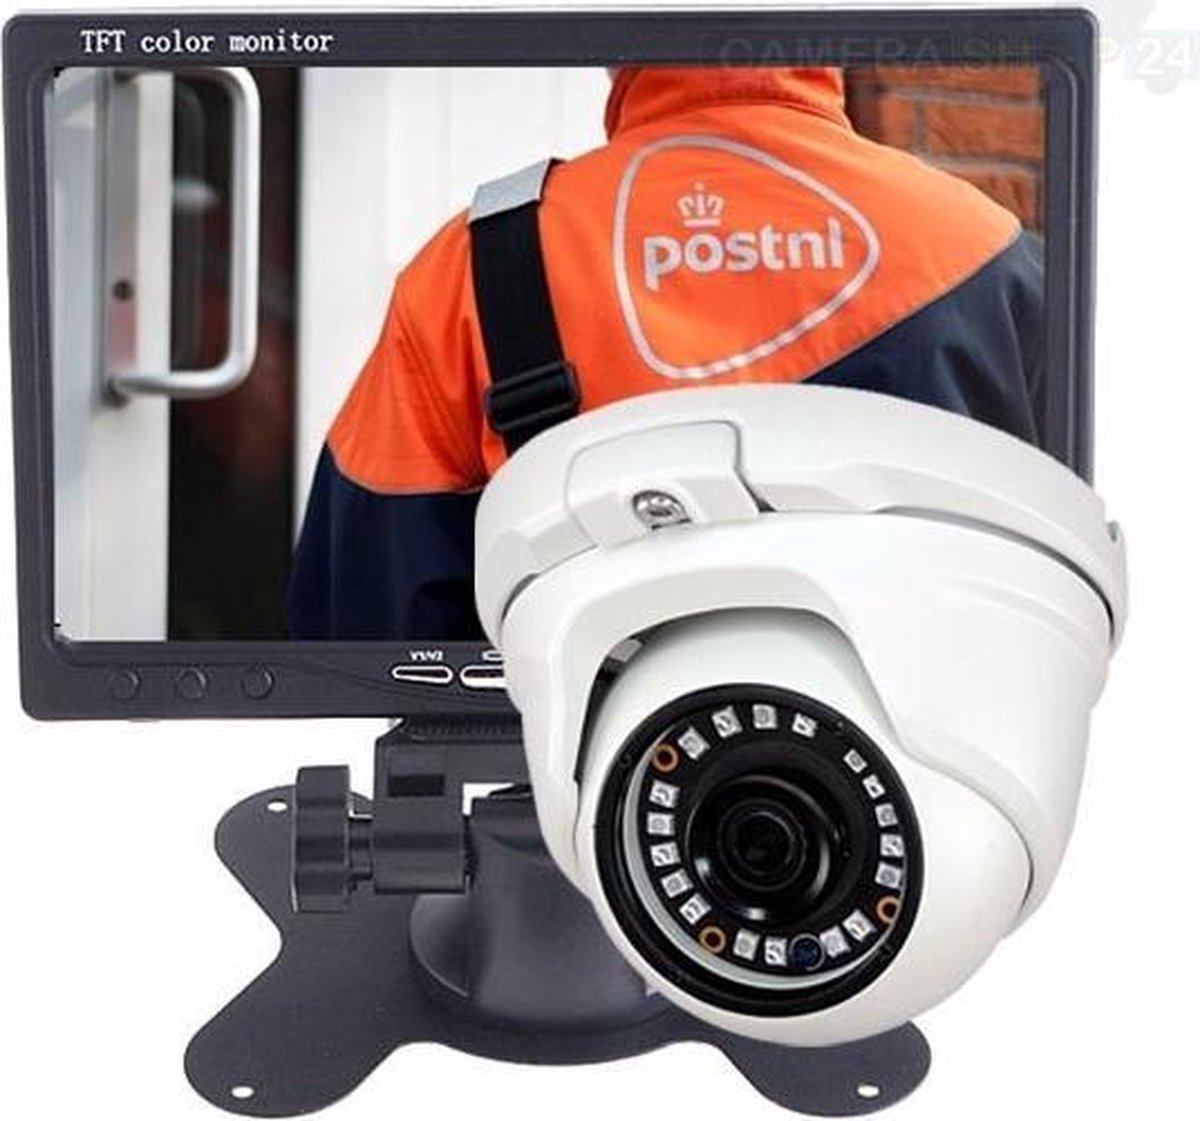 Analoge camera wit met 7 inch TFT monitor - kijkhoek 100 graden - 20 meter nachtzicht